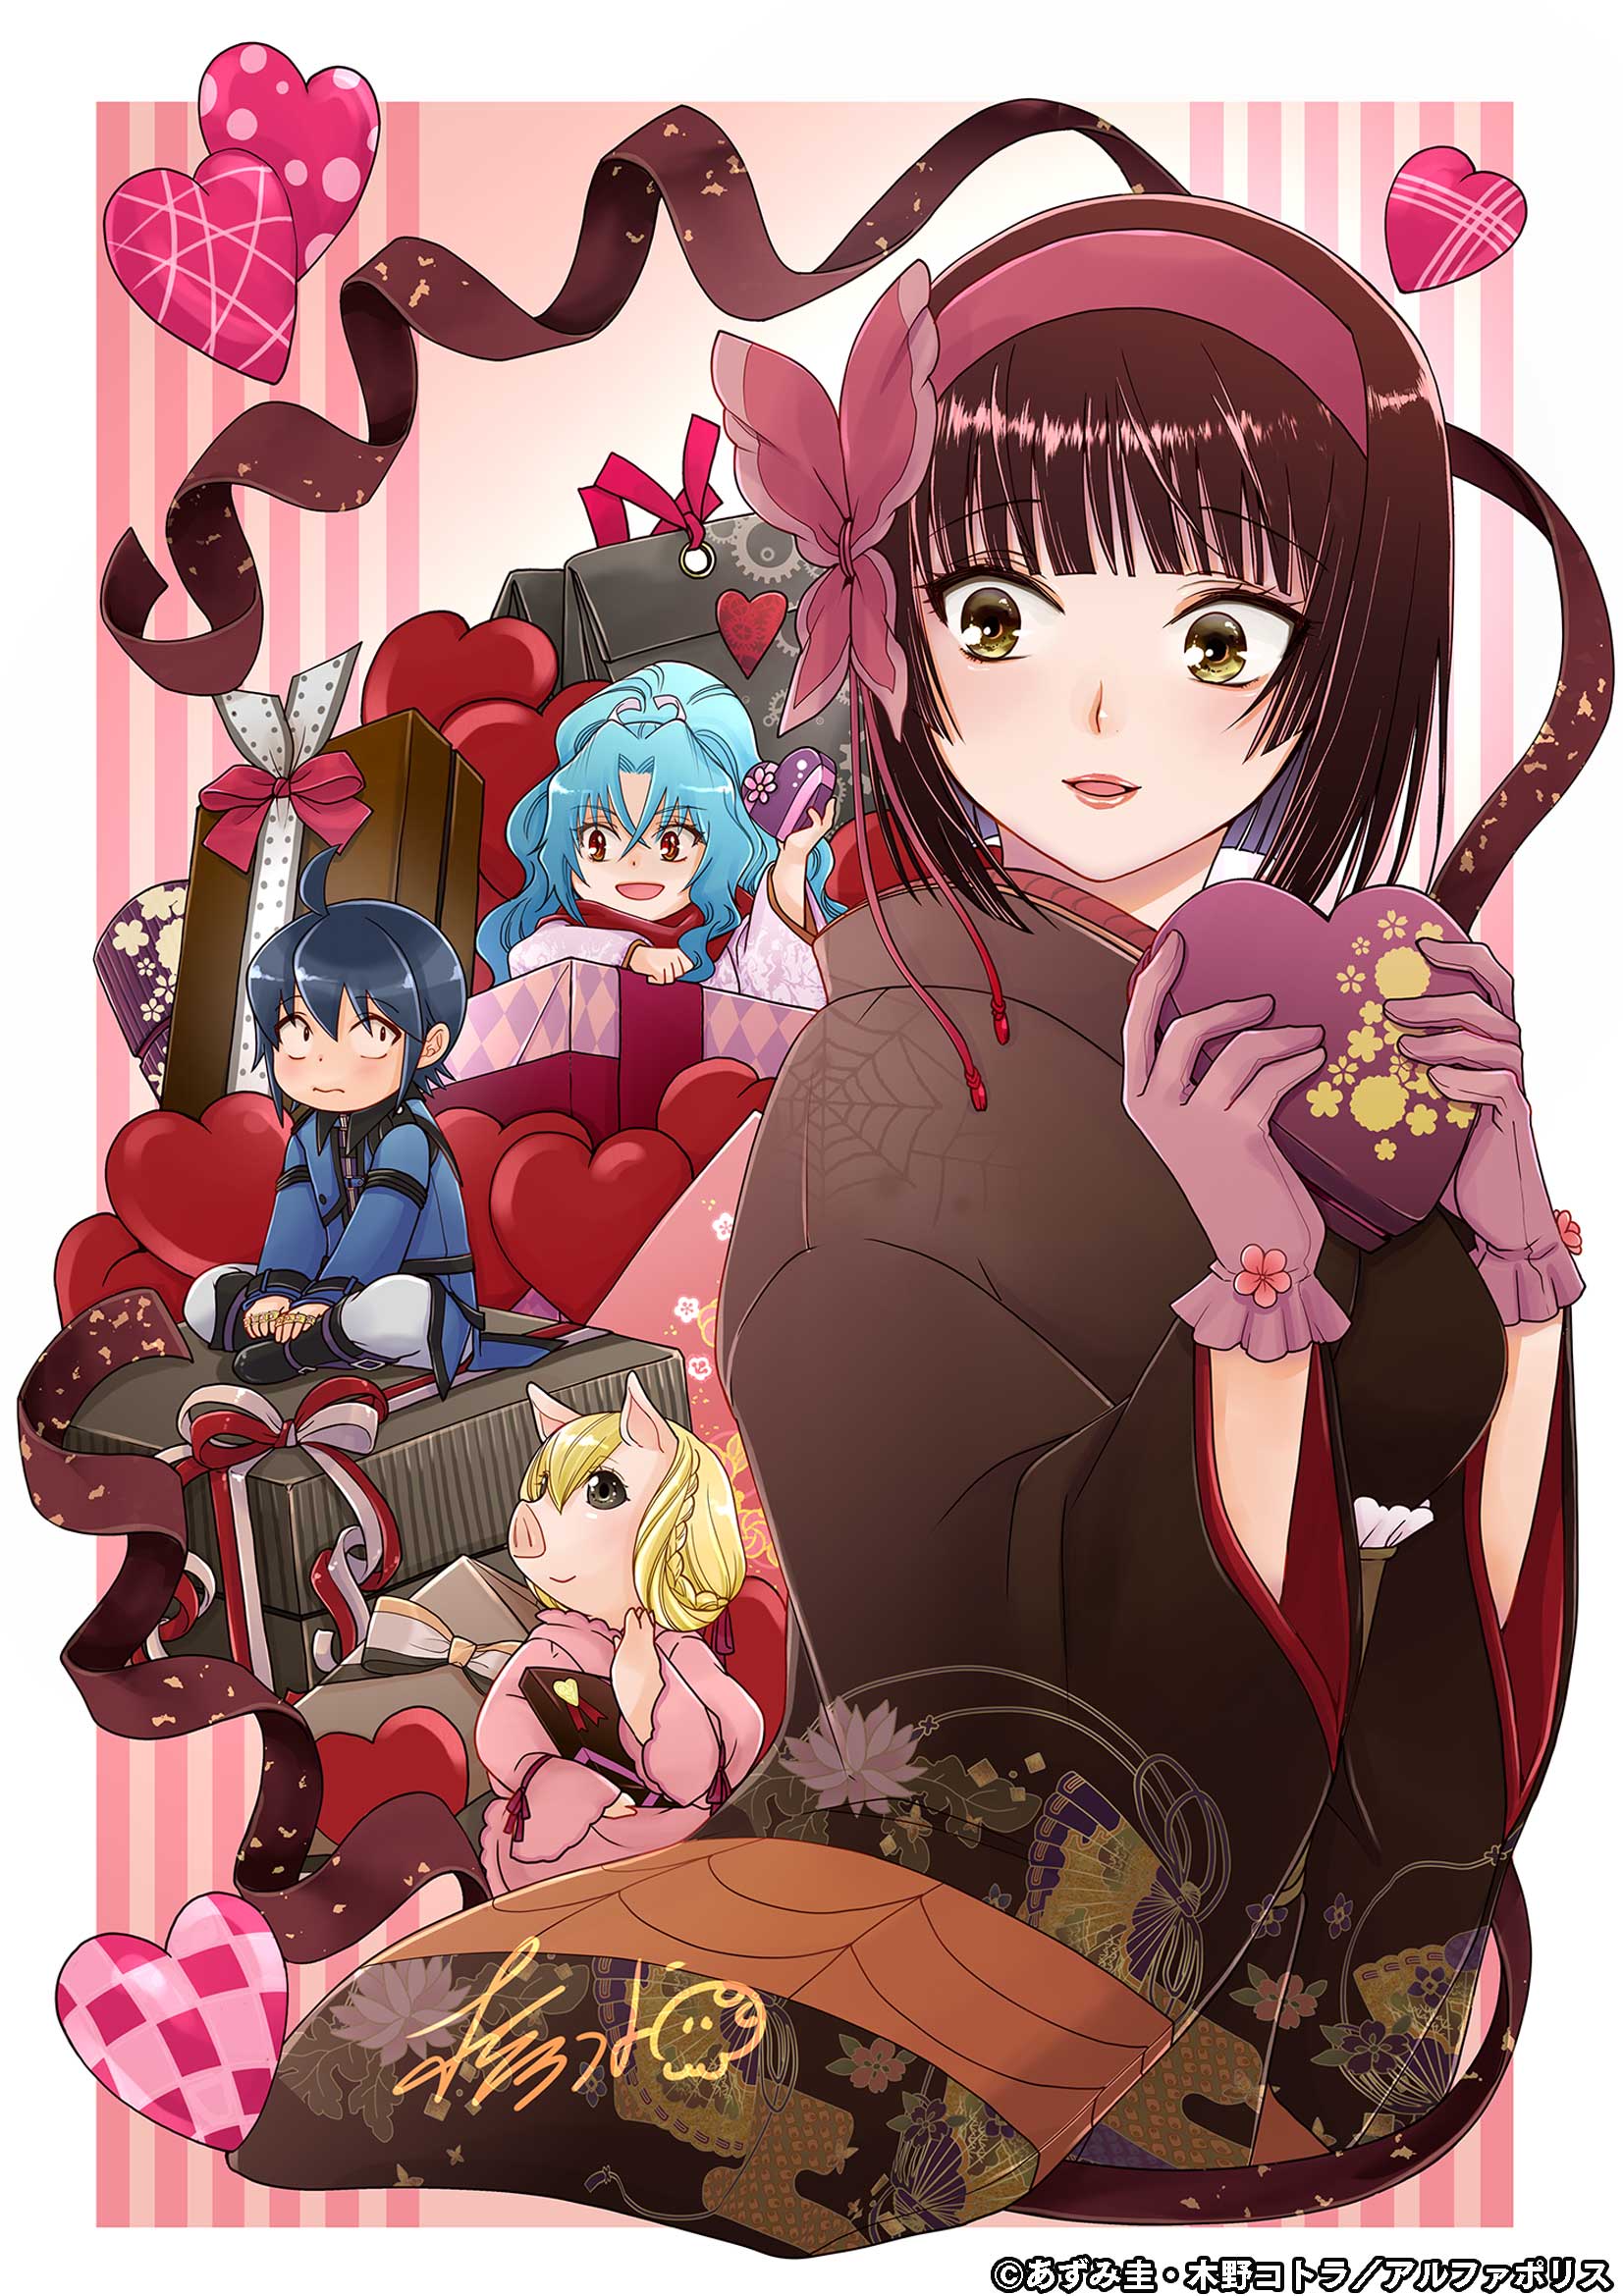 Tsuki ga Michibiku Isekai Douchuu Anime Image Board